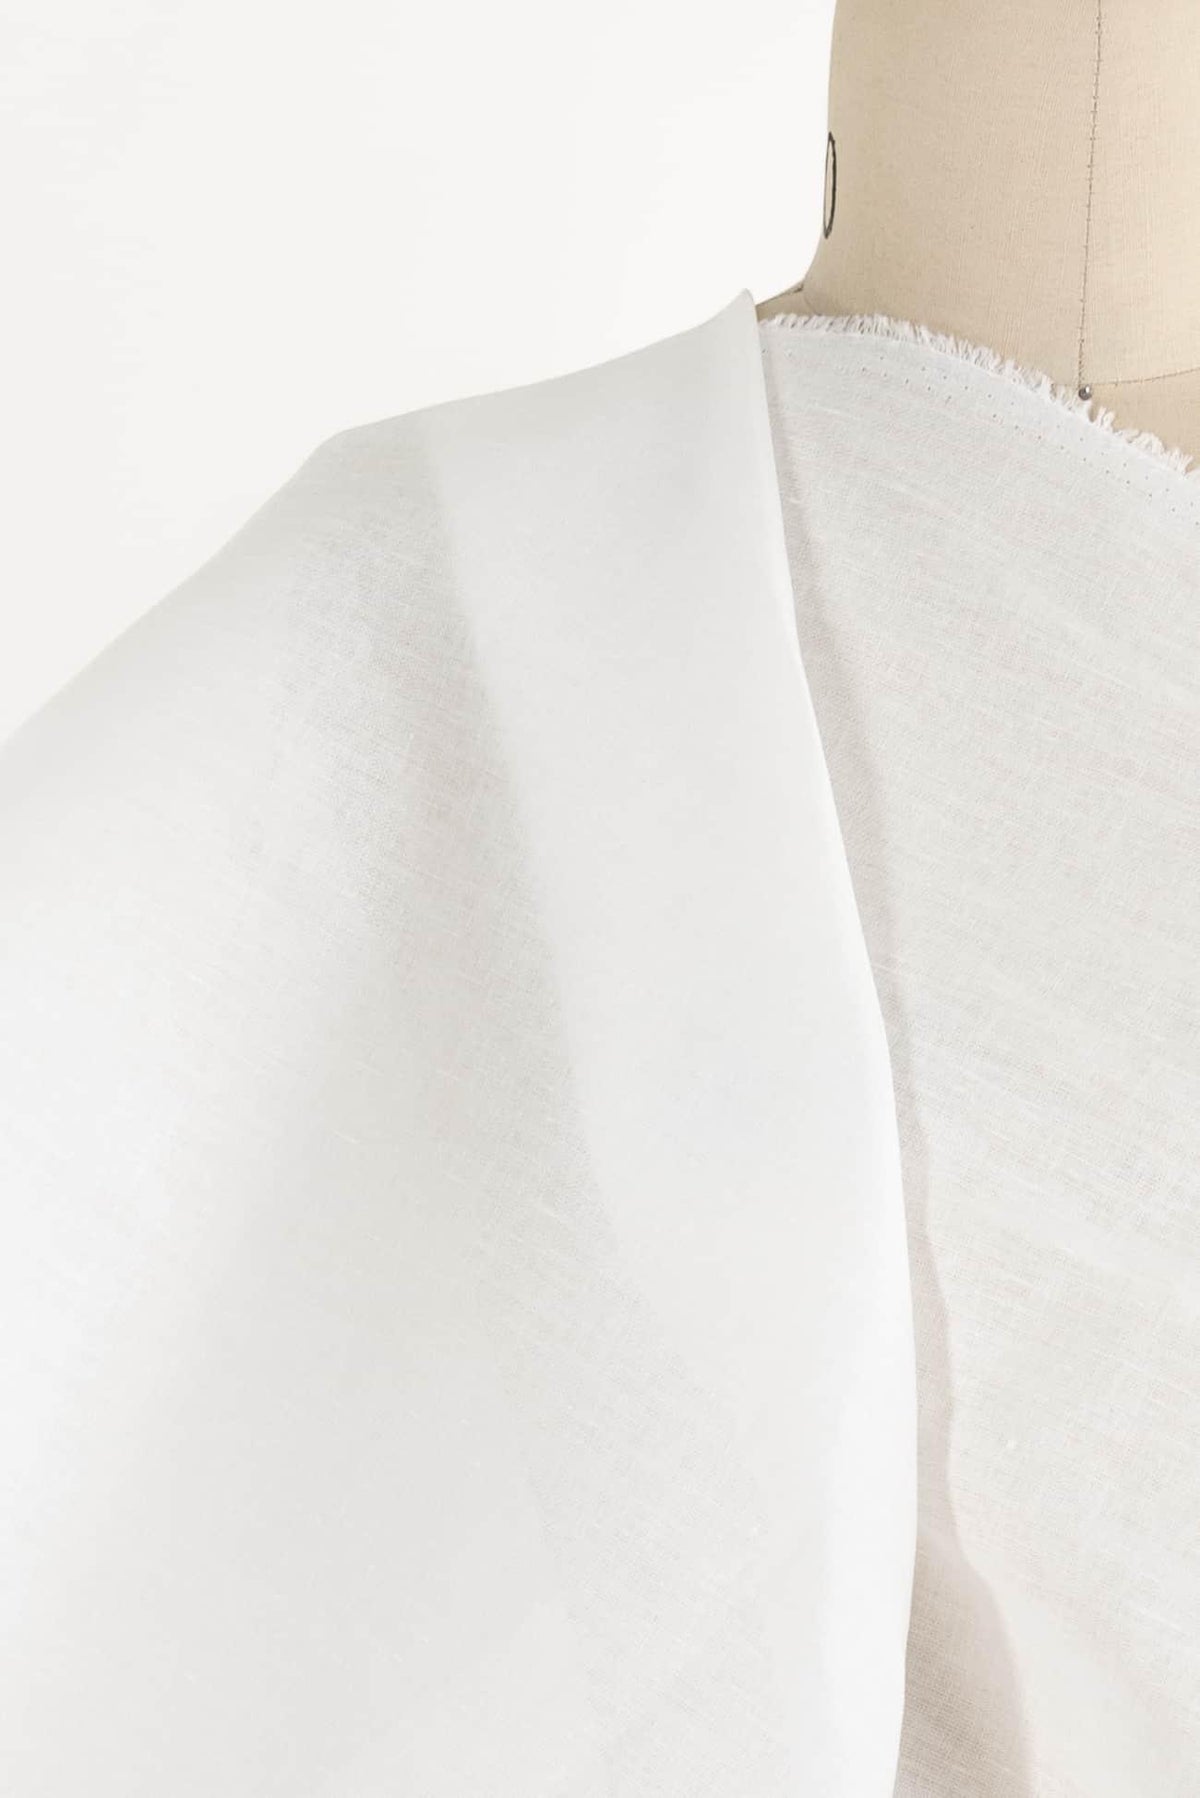 Chalk White Euro Linen/Cotton Woven - Marcy Tilton Fabrics